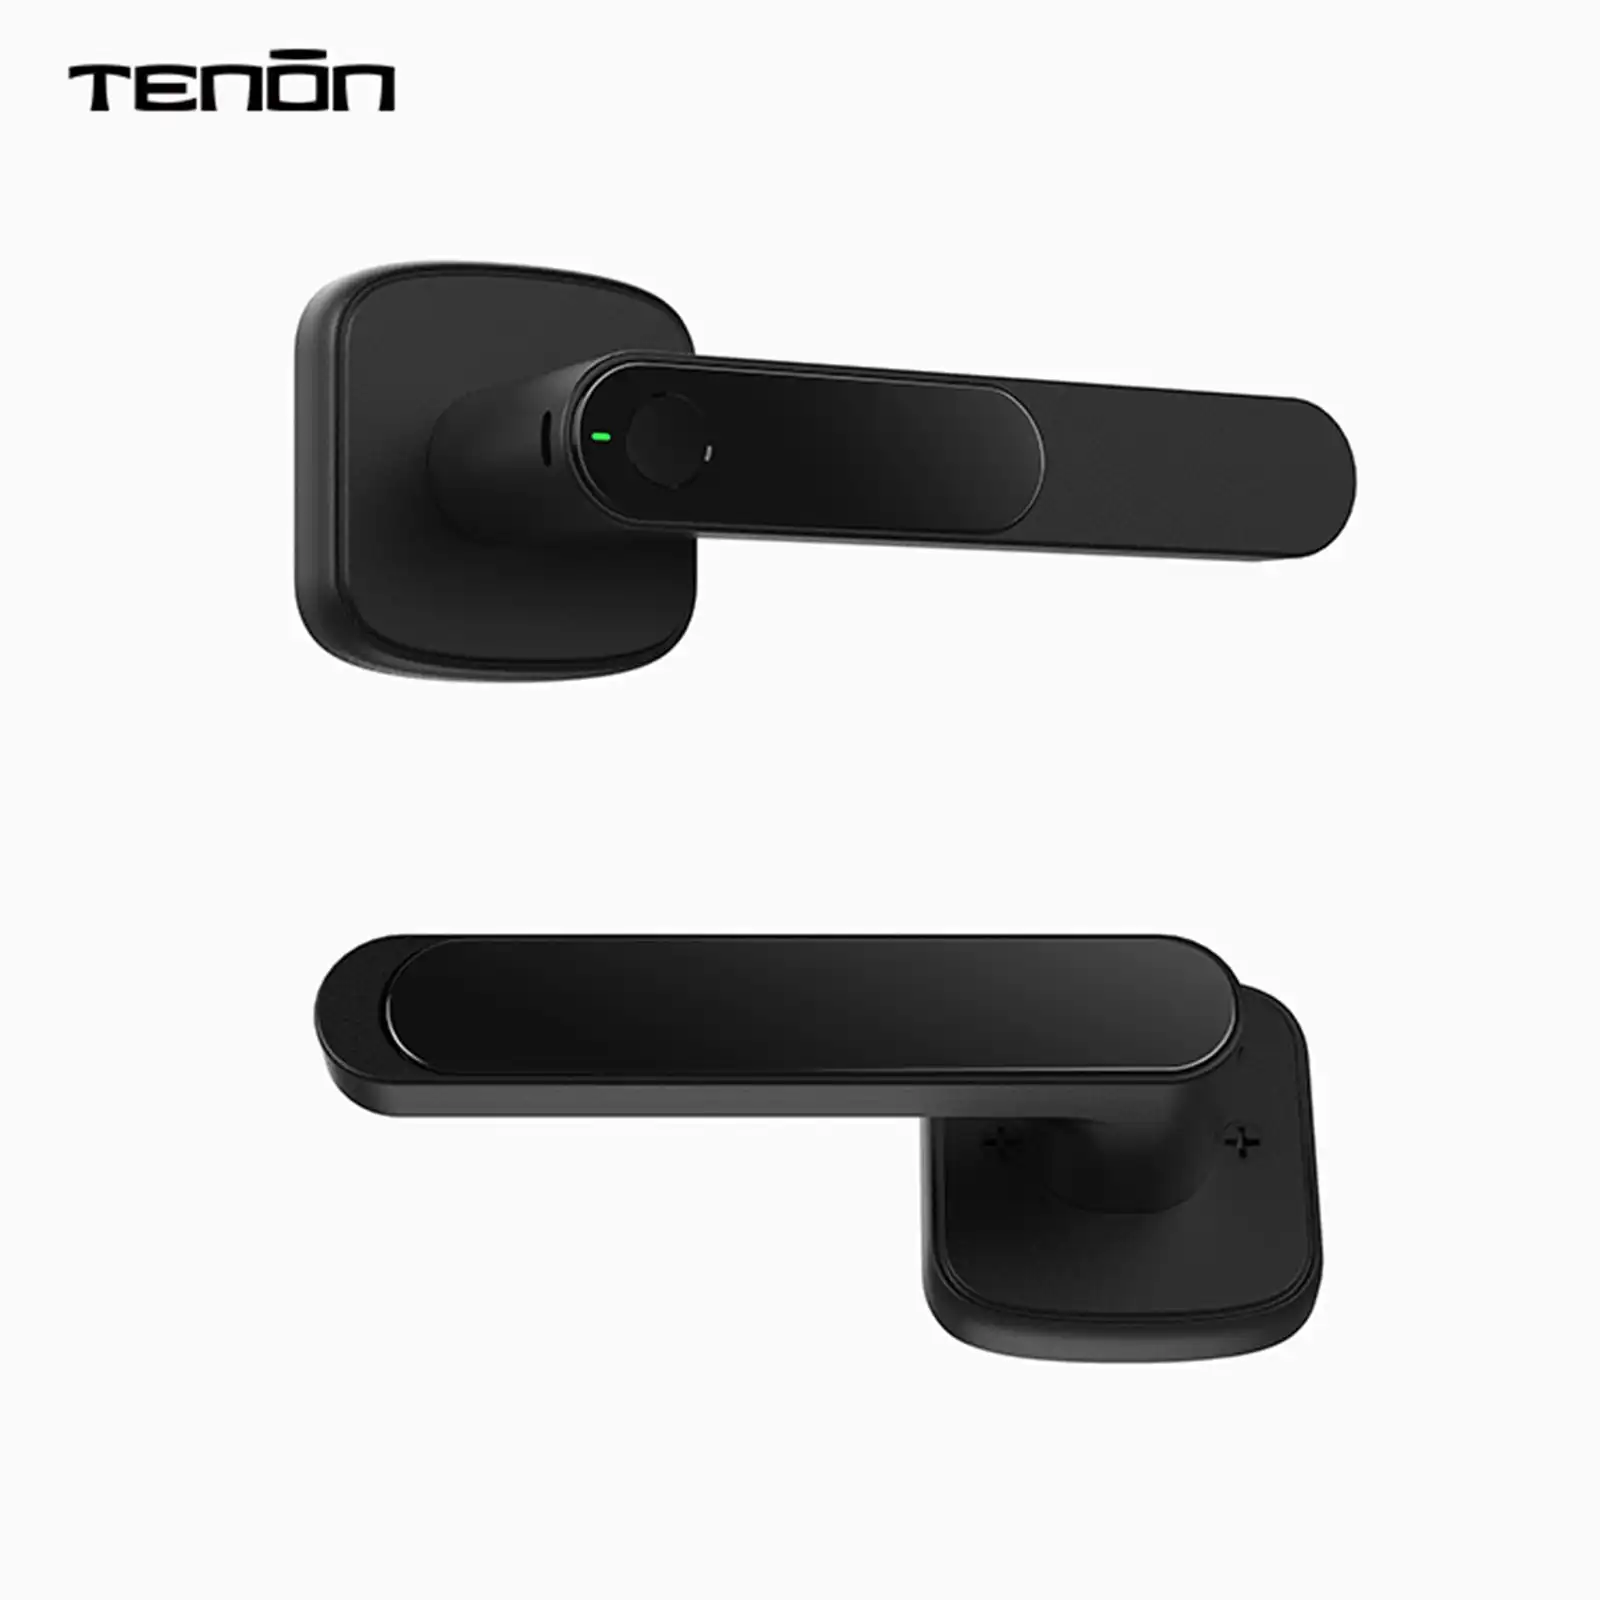 Tenon K1 - Smart Lock Smart Home System Fingerprint Door Lock